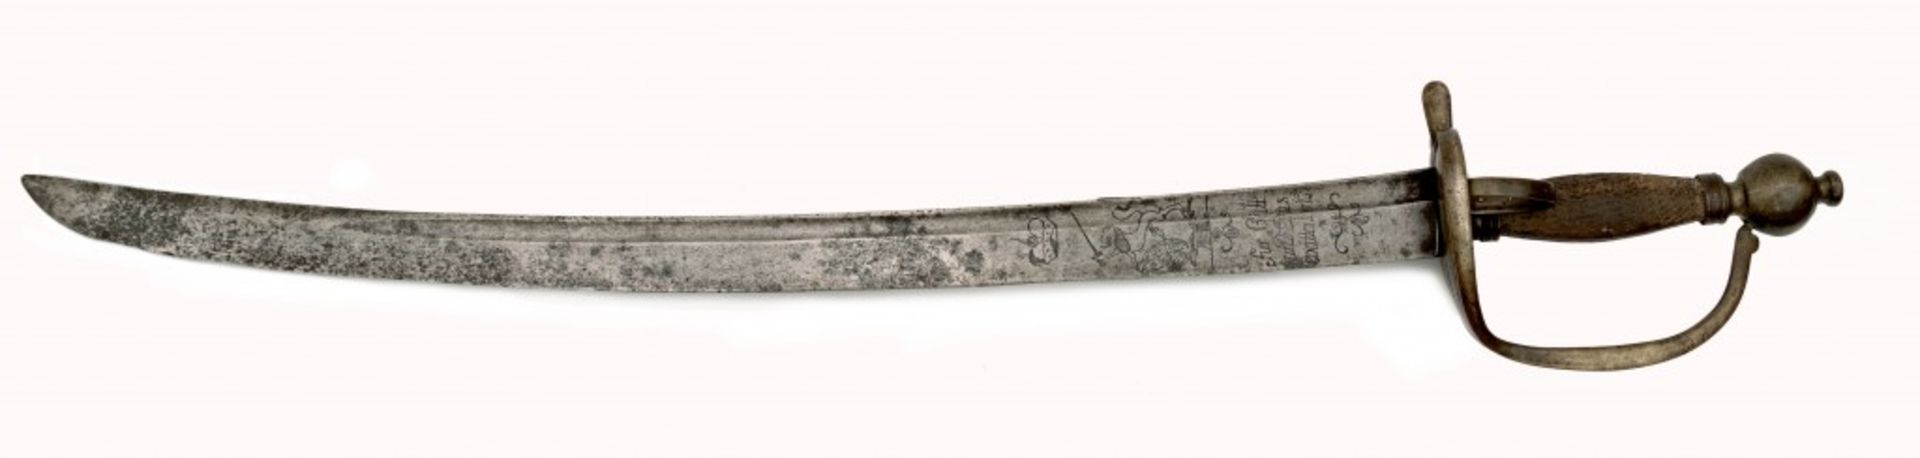 Swiss Grenadier Sword 1770/78 Zurich - Bild 4 aus 7